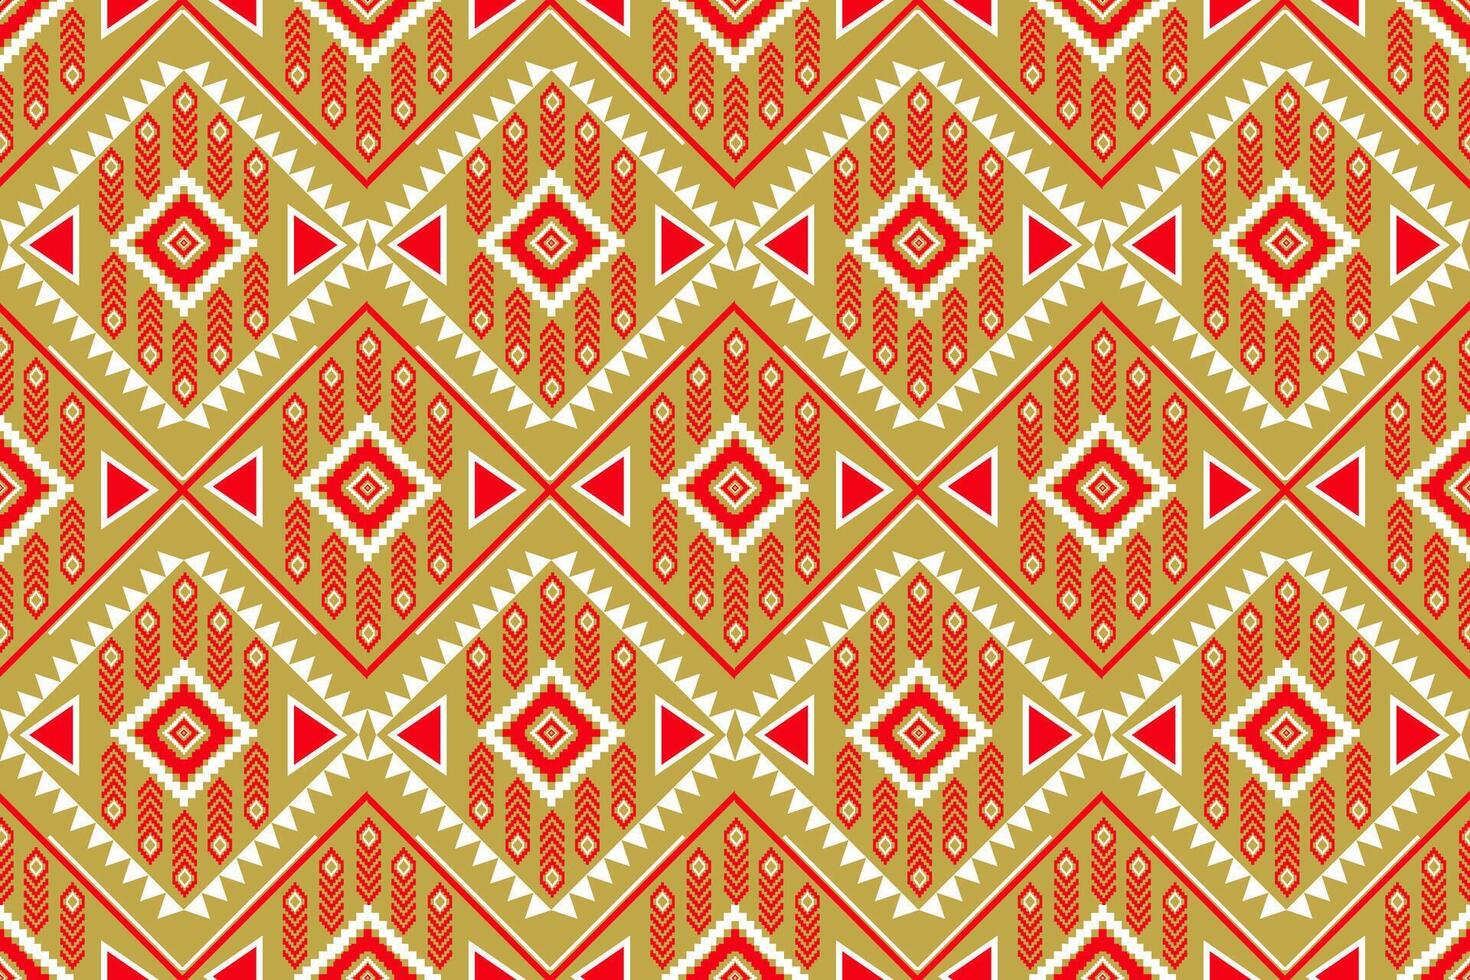 Geometrie Muster nahtlos ethnisch rot Gelb Weiß Design zum drucken Textil- Teppich vektor